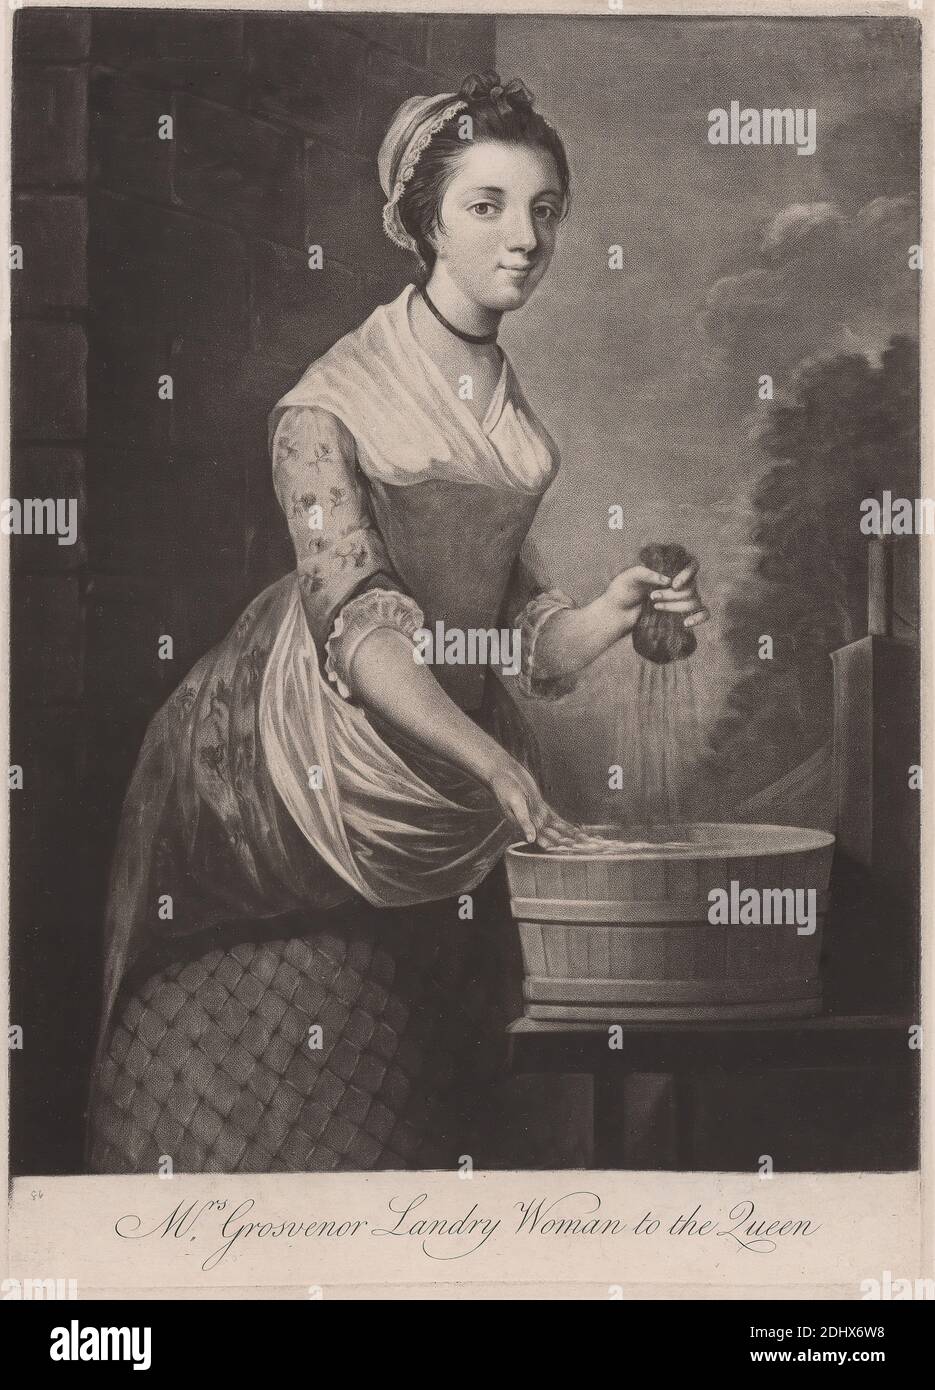 Frau Grosvenor Frau zur Königin, unbekannte Künstlerin, achtzehnten Jahrhundert, undatiert, Mezzotint Stockfoto